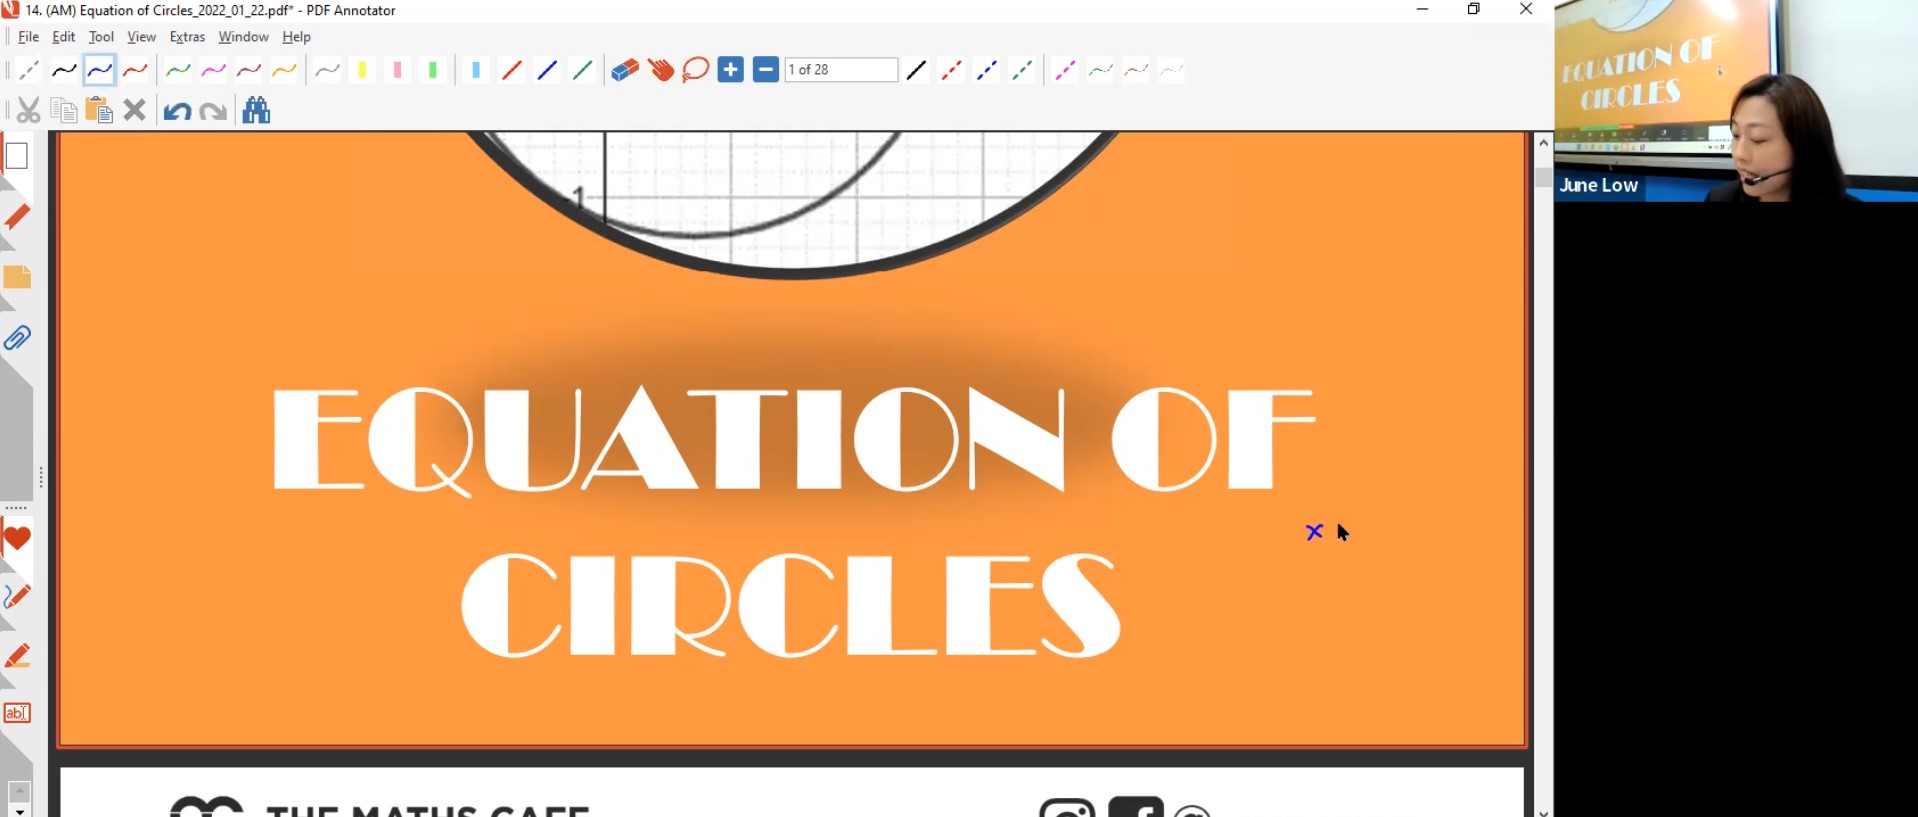 22. (AM) Equation of Circles L1 [2022] - JL